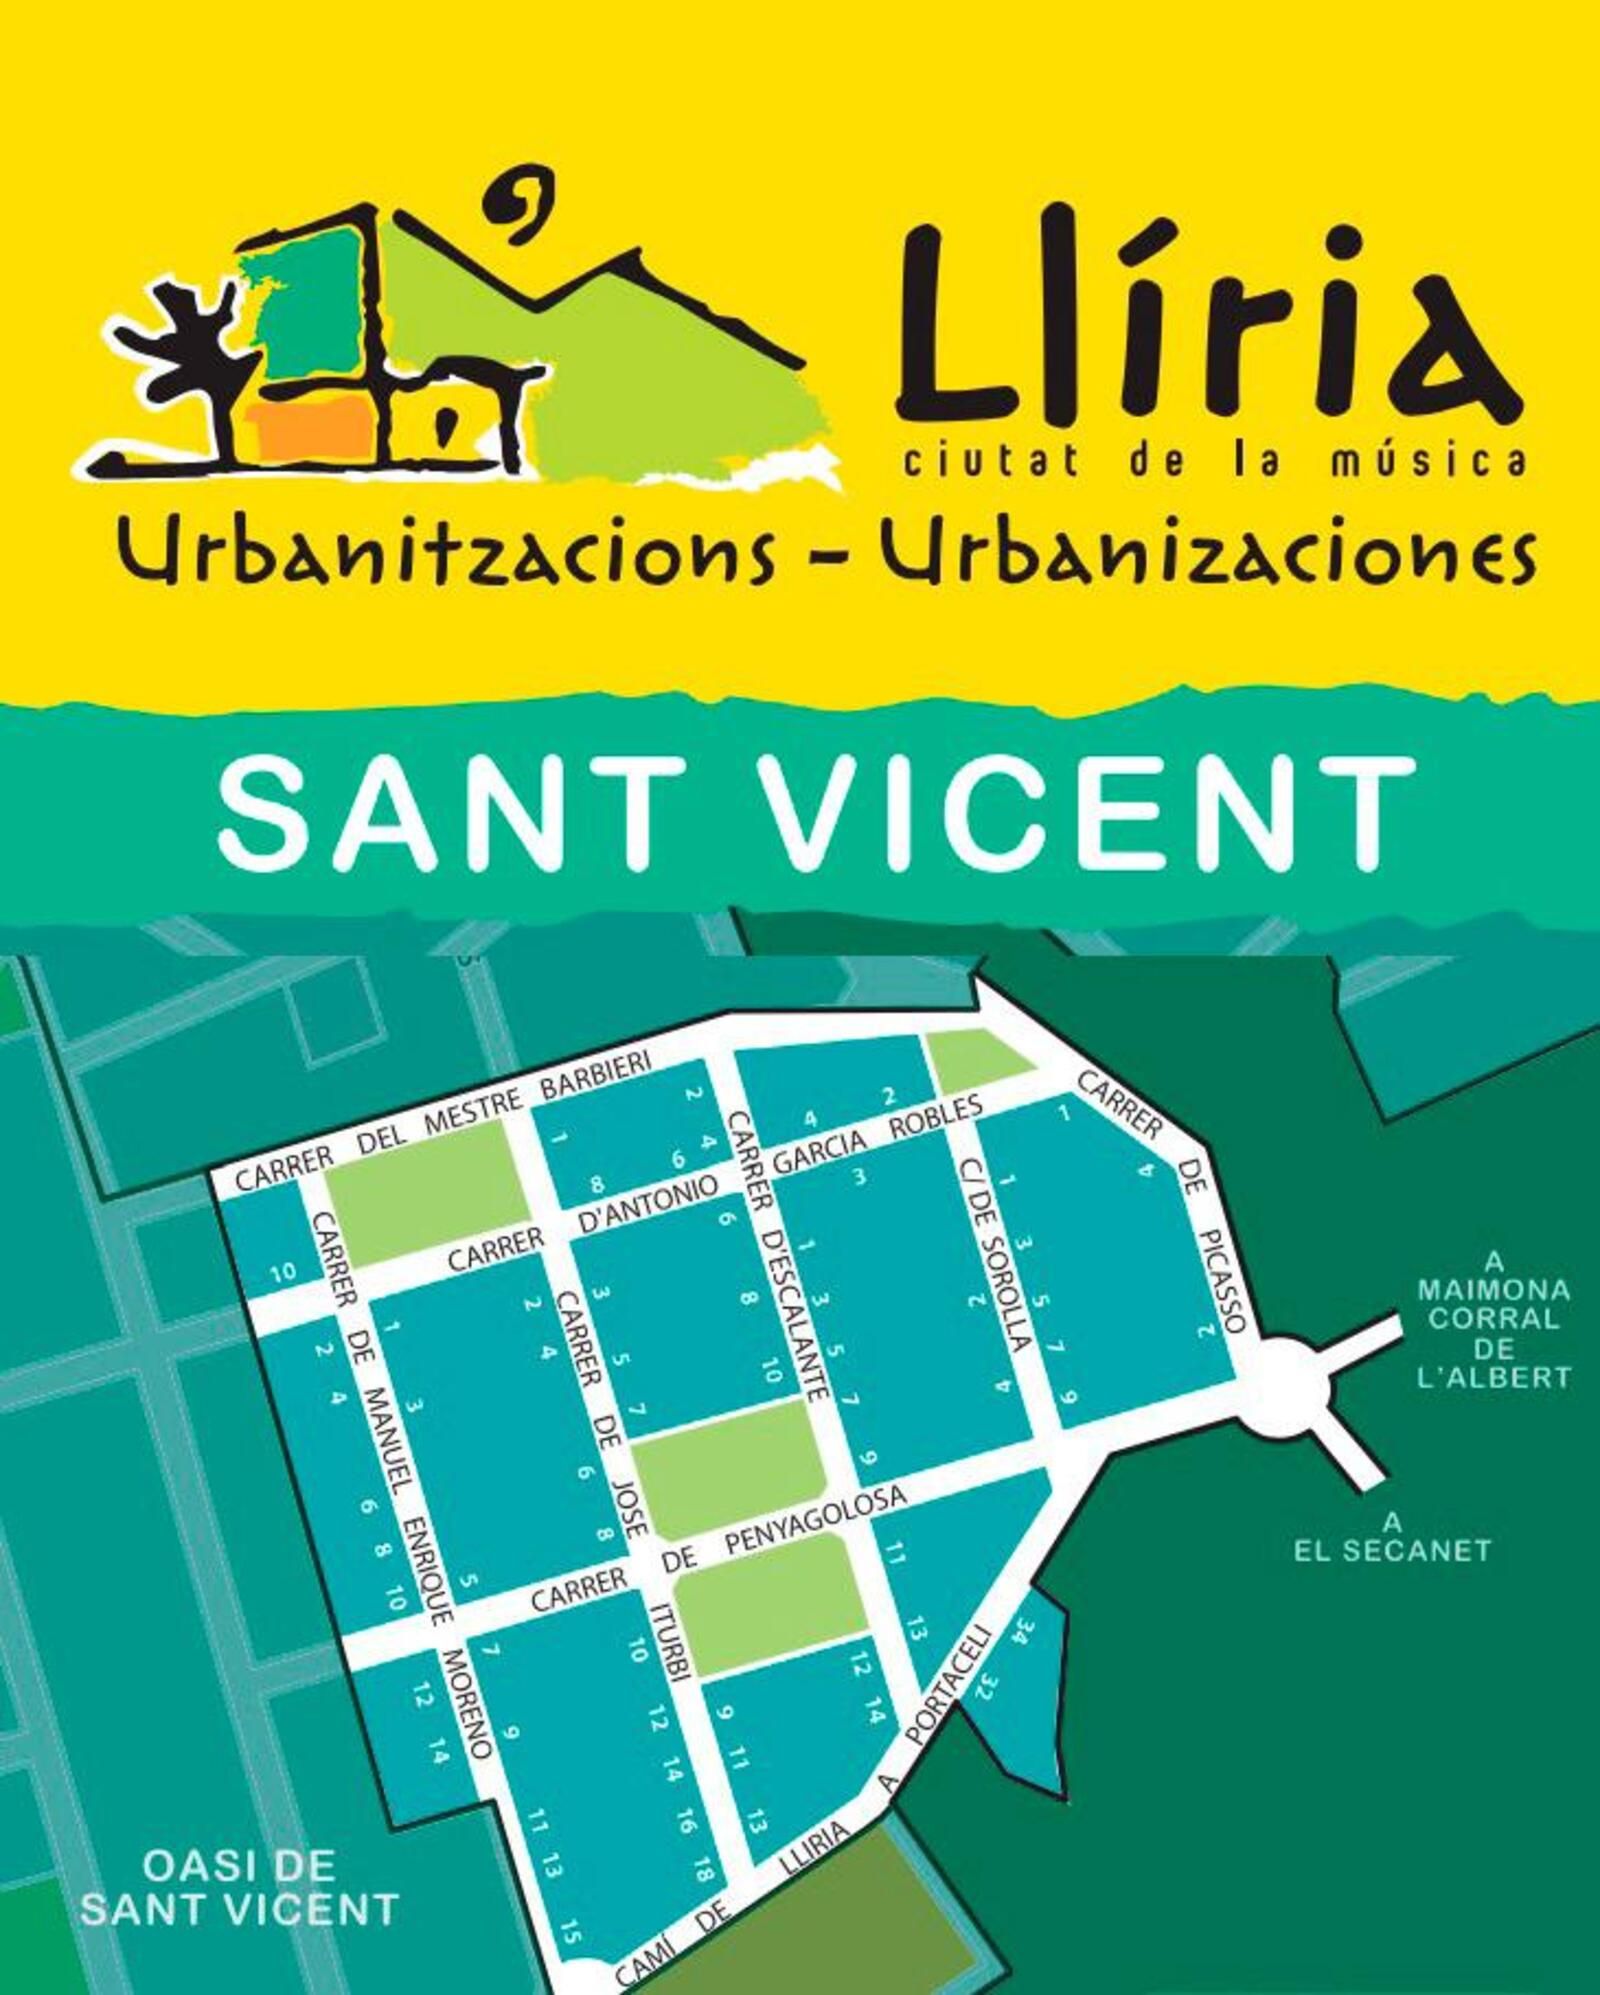 Proyecto de mejora en la urbanización de Sant Vicent 19b.